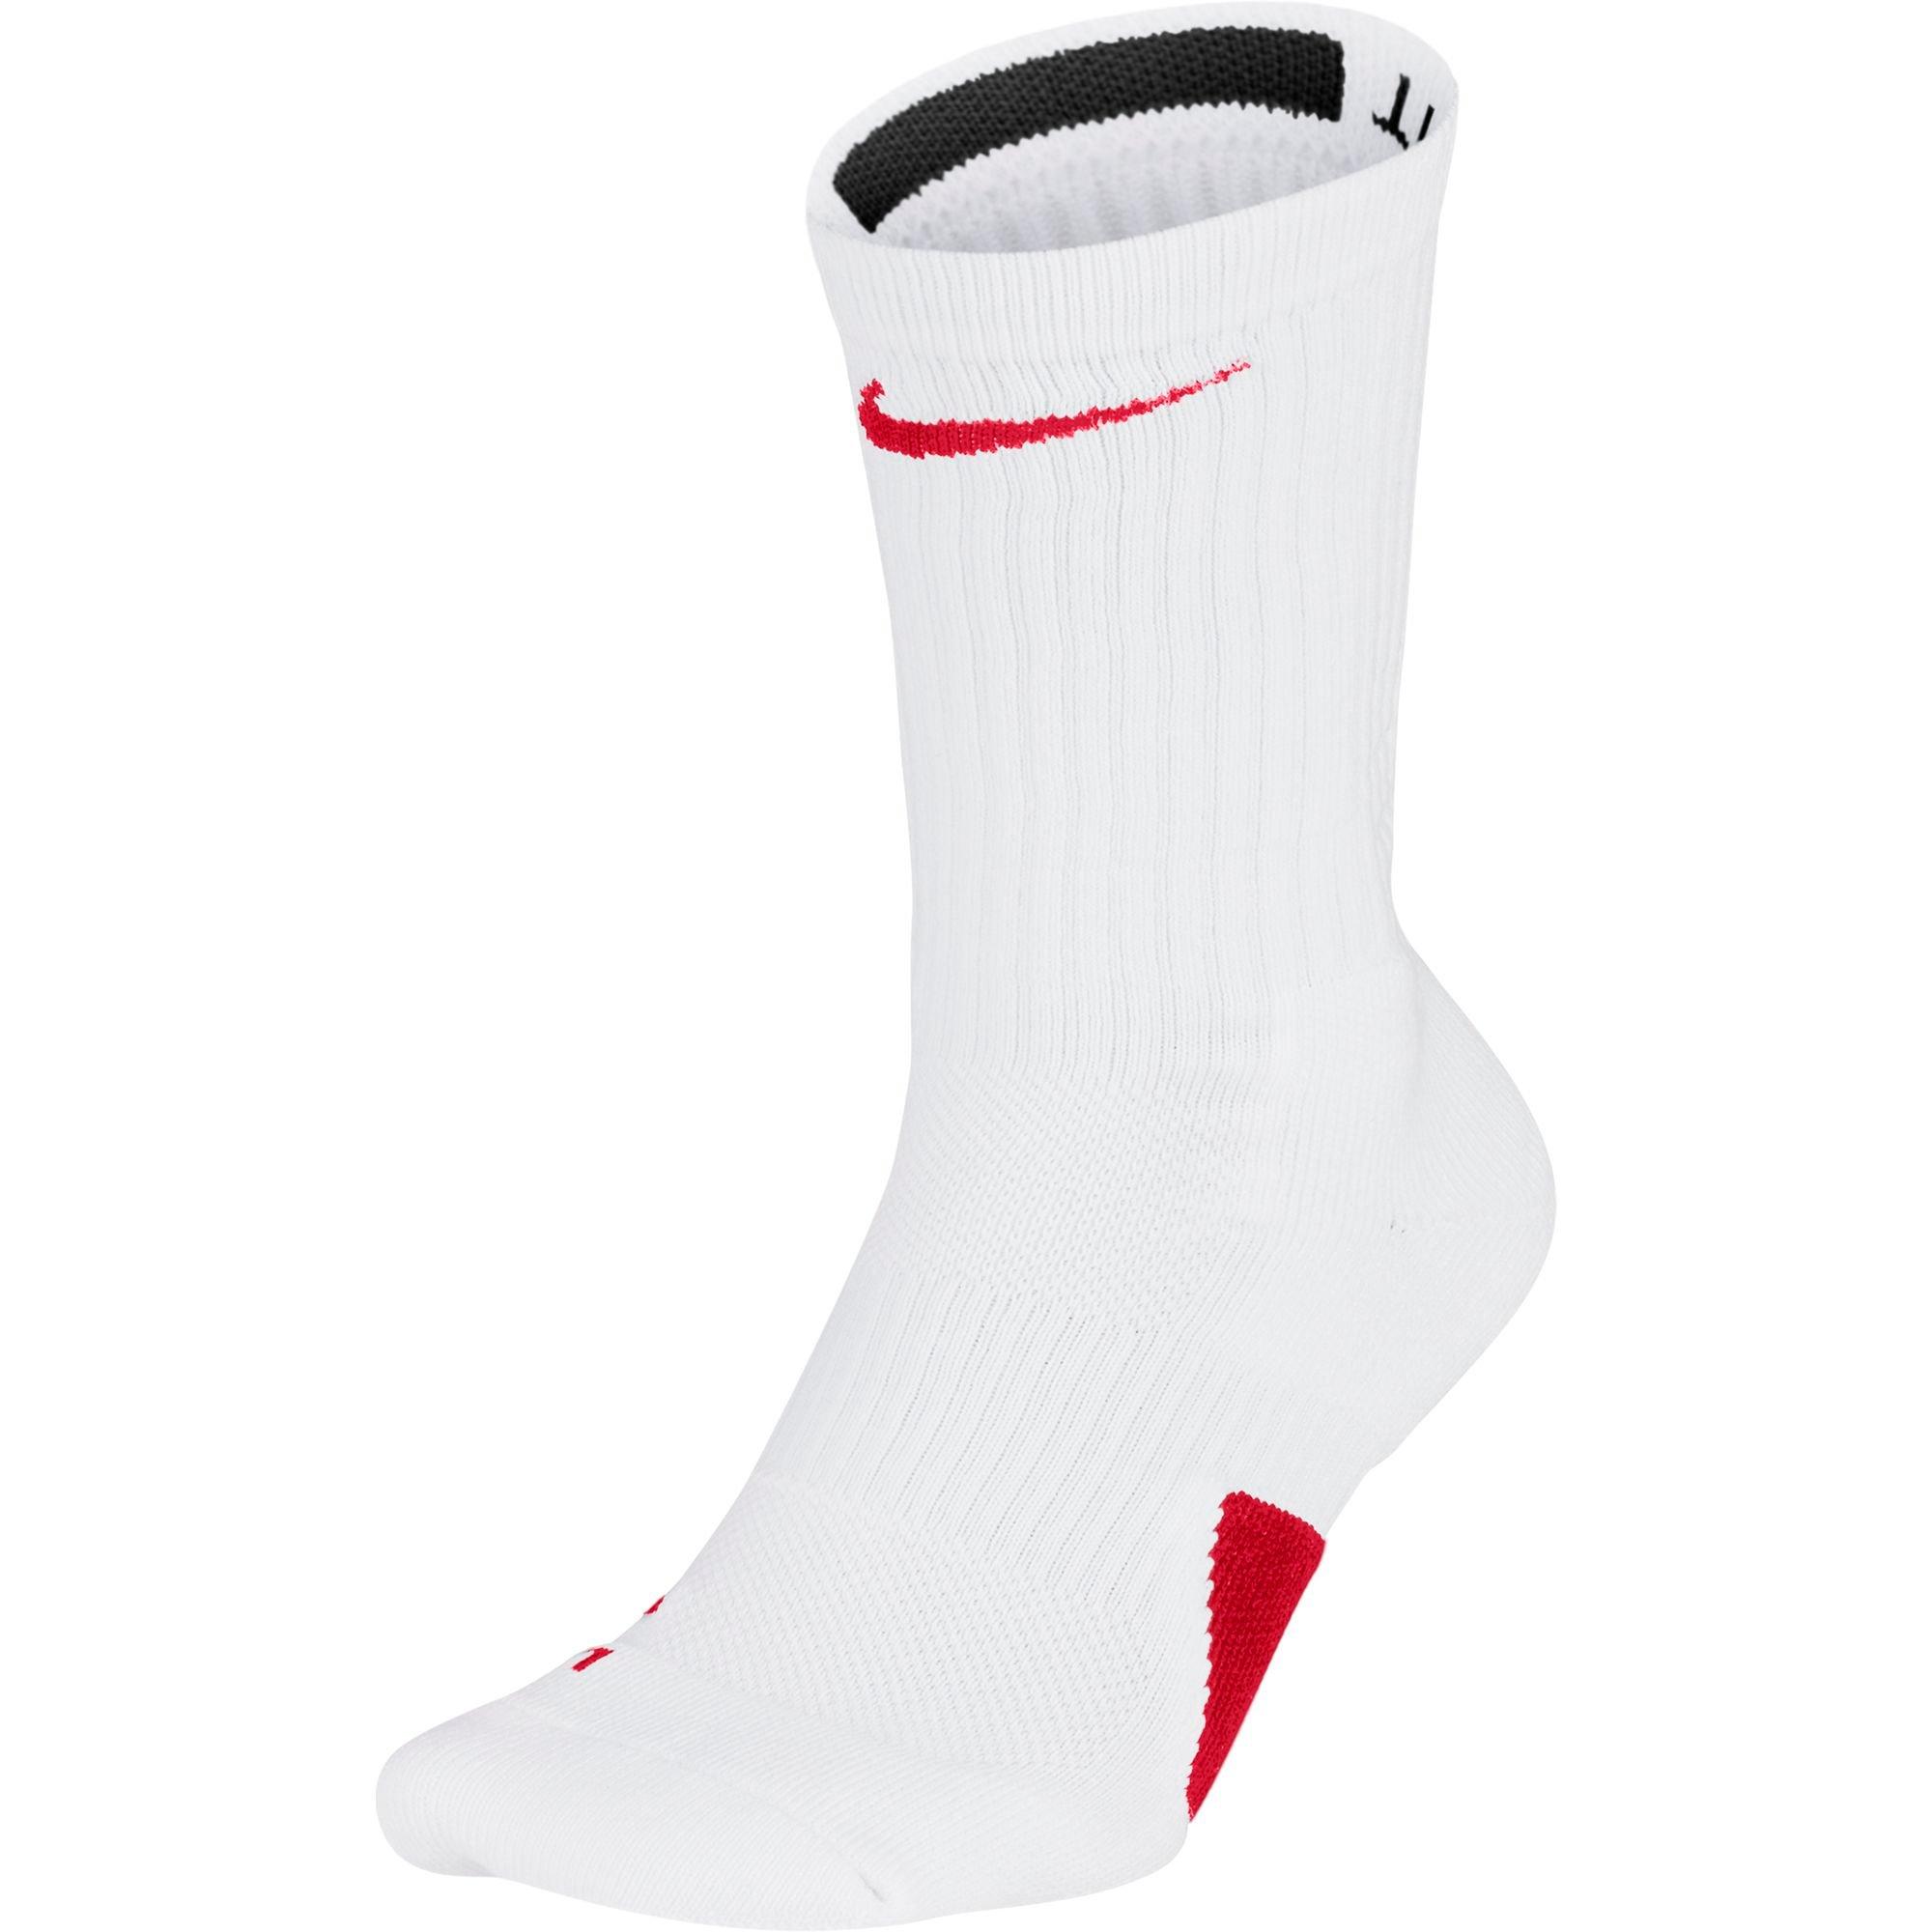 forbedre Kælder valse Nike Elite Unisex Crew Basketball Socks - White/Red